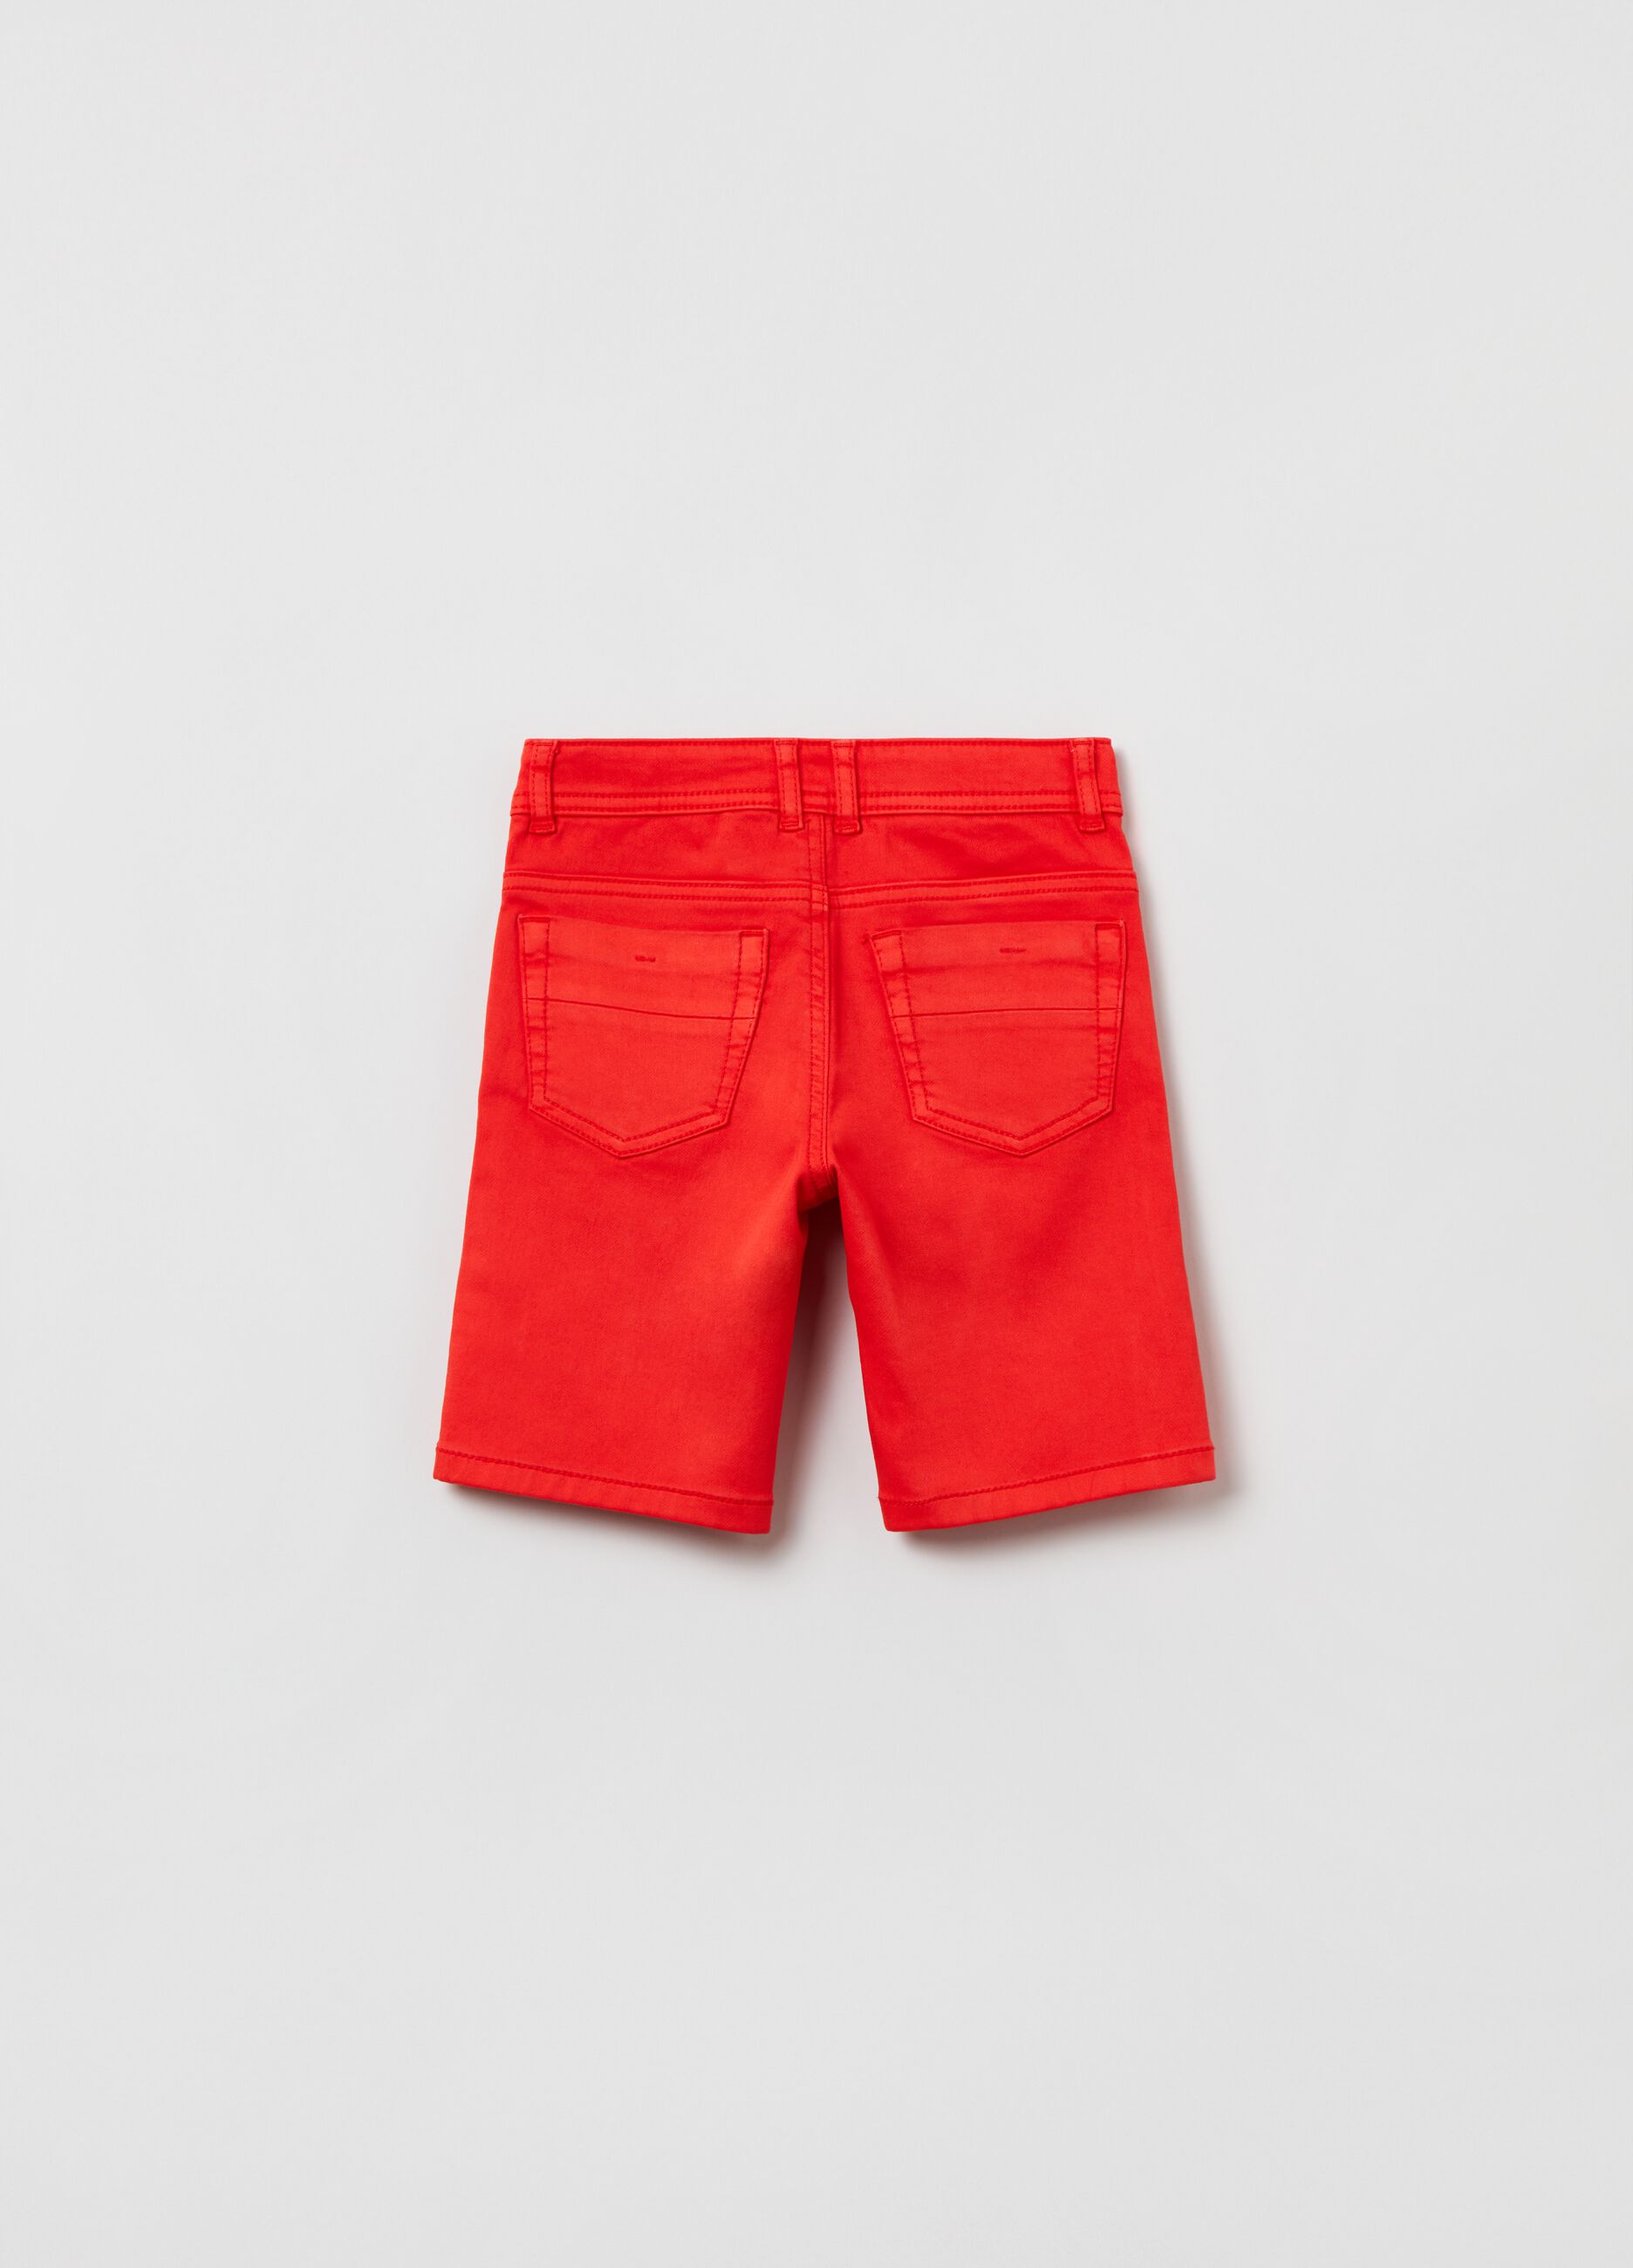 5-pocket stretch shorts